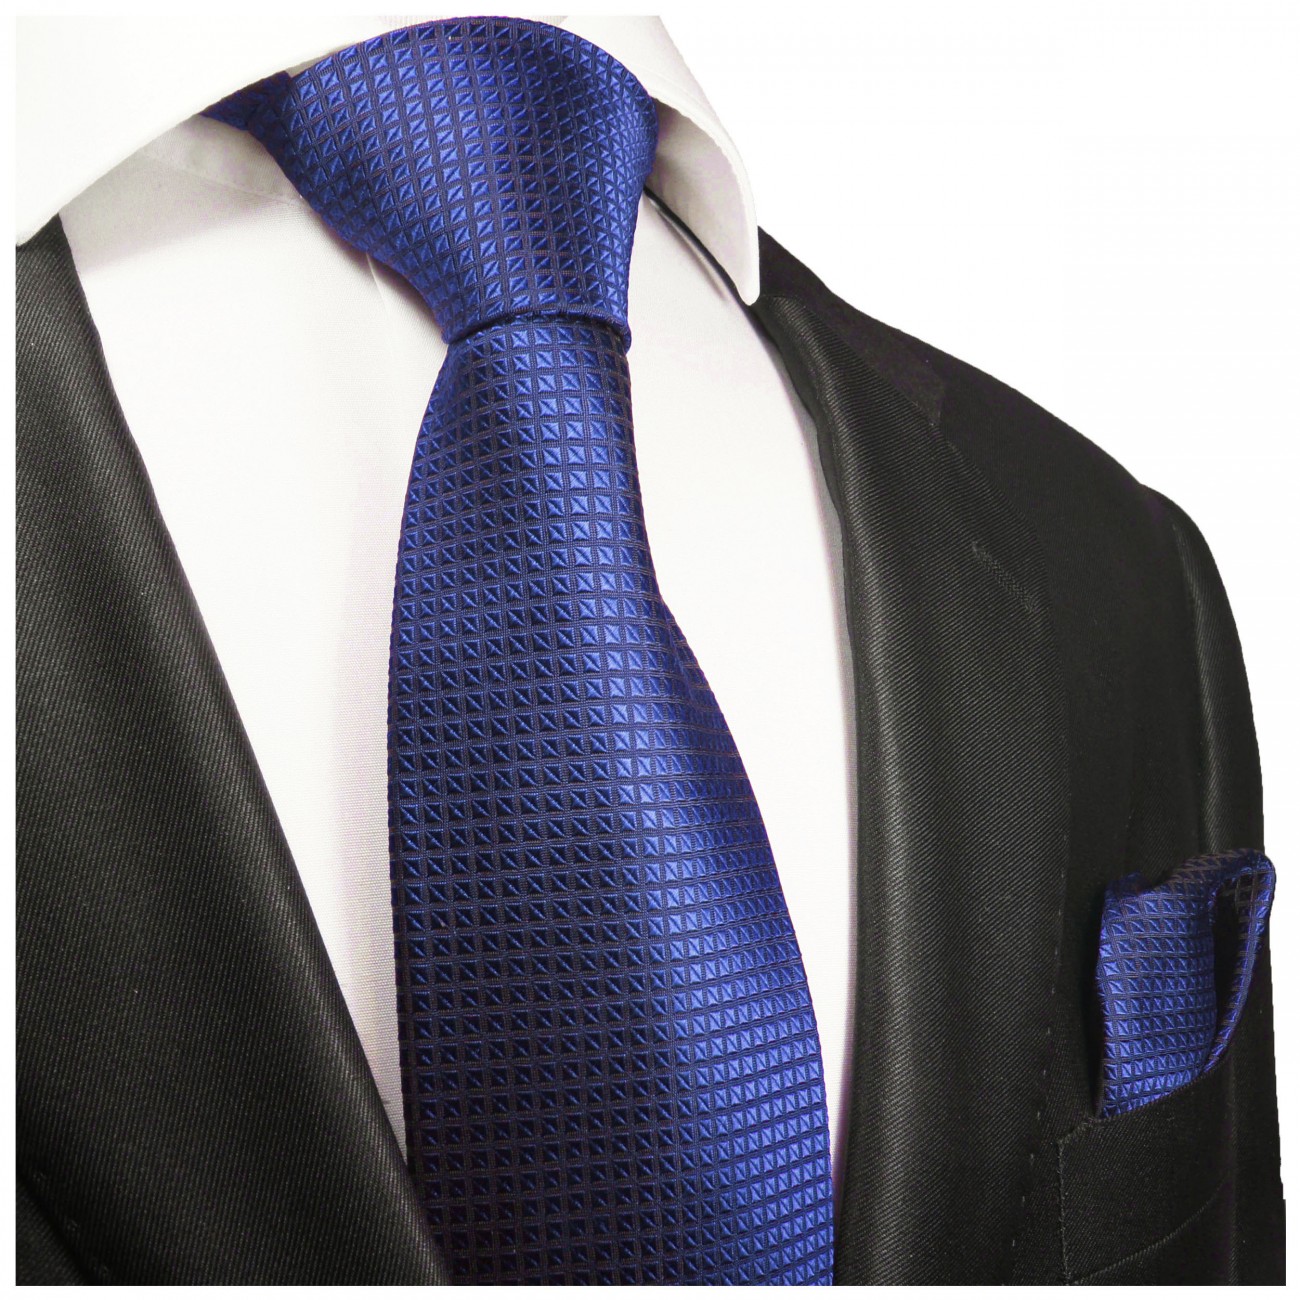 Krawatte royal blau mit Einstecktuch fein kariert 2048